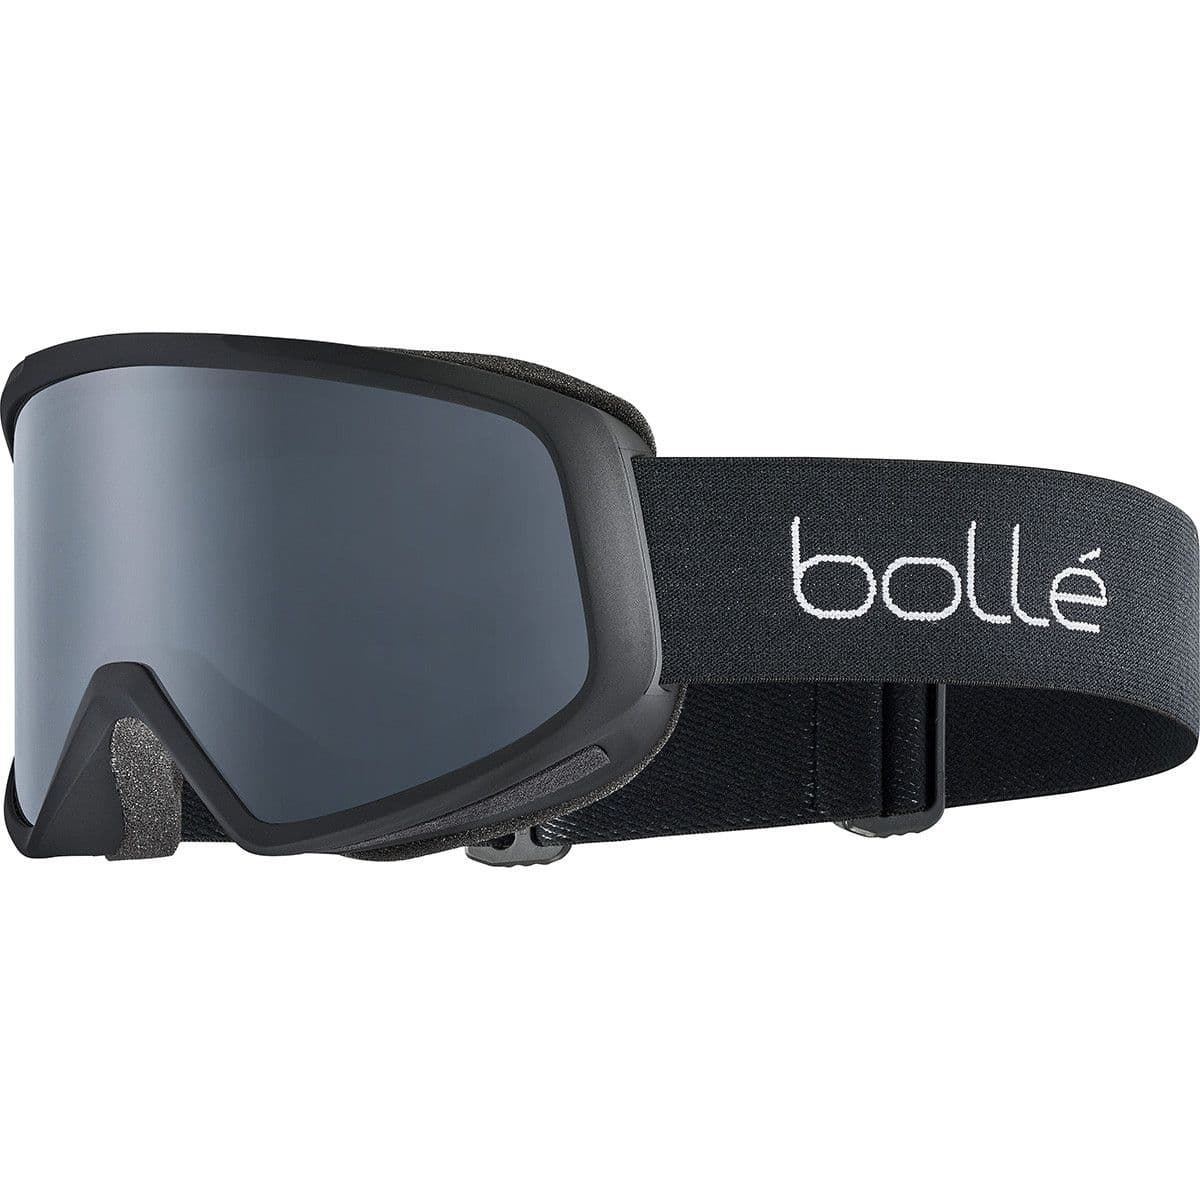 Bolle Bedrock Ski Goggles